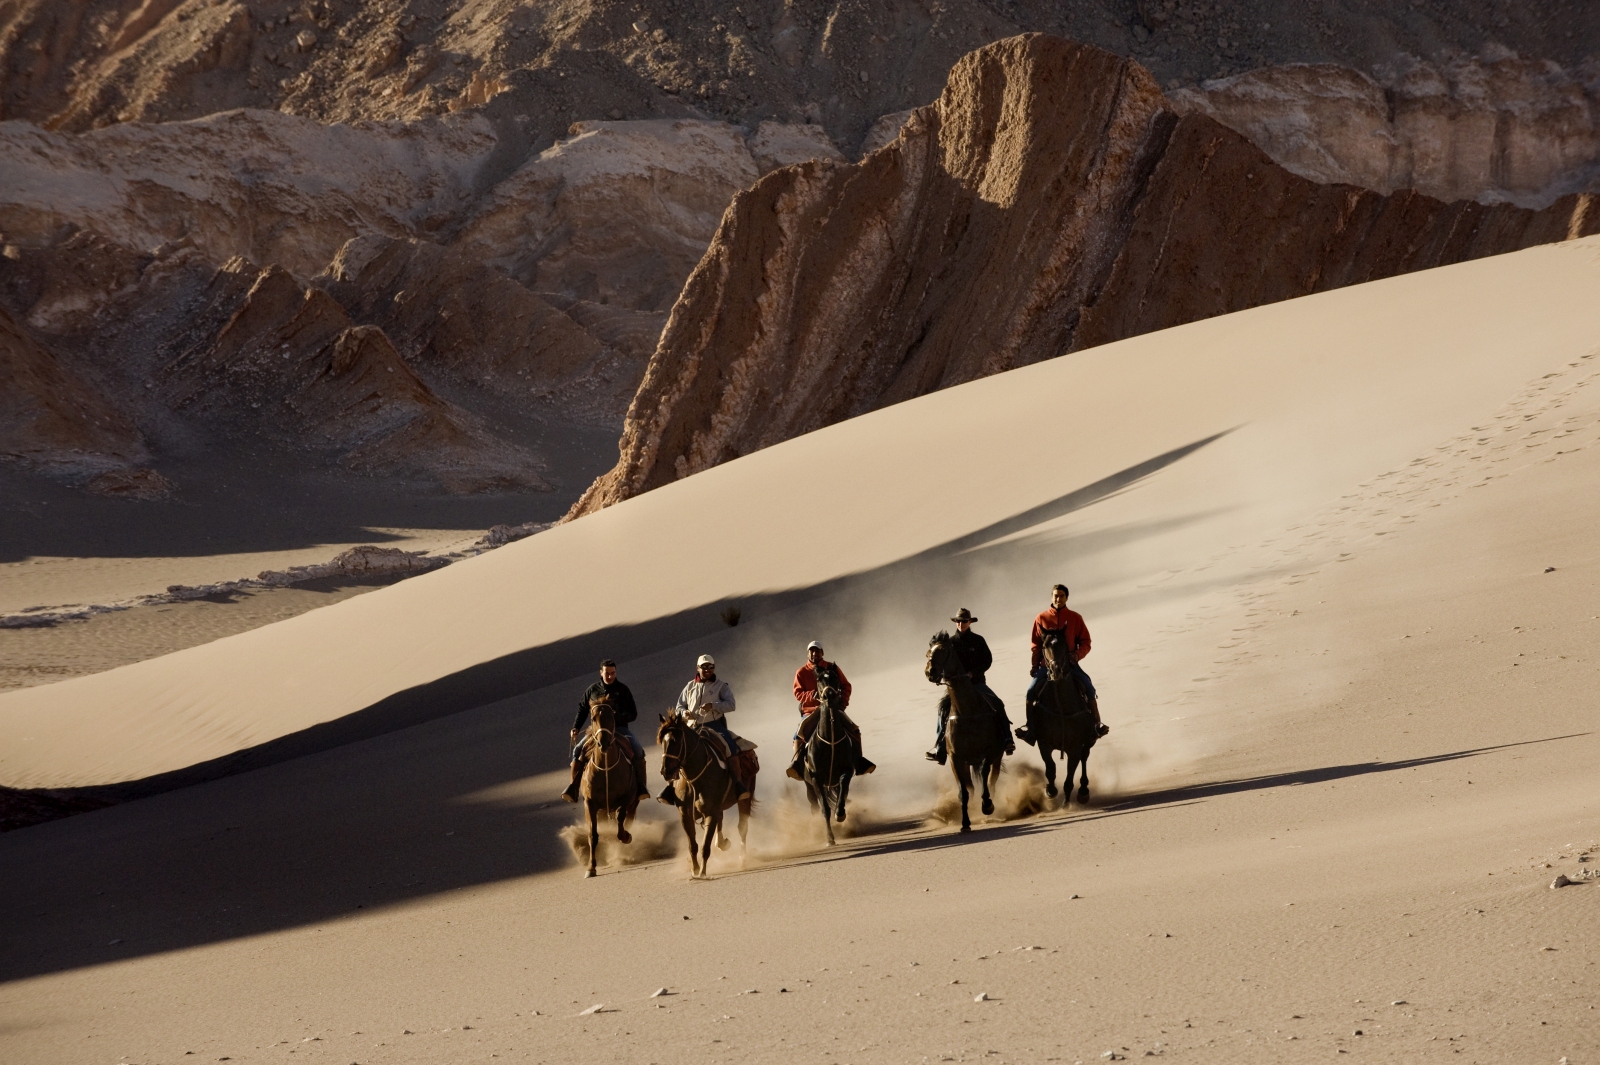 Five riders in the Atacama Desert